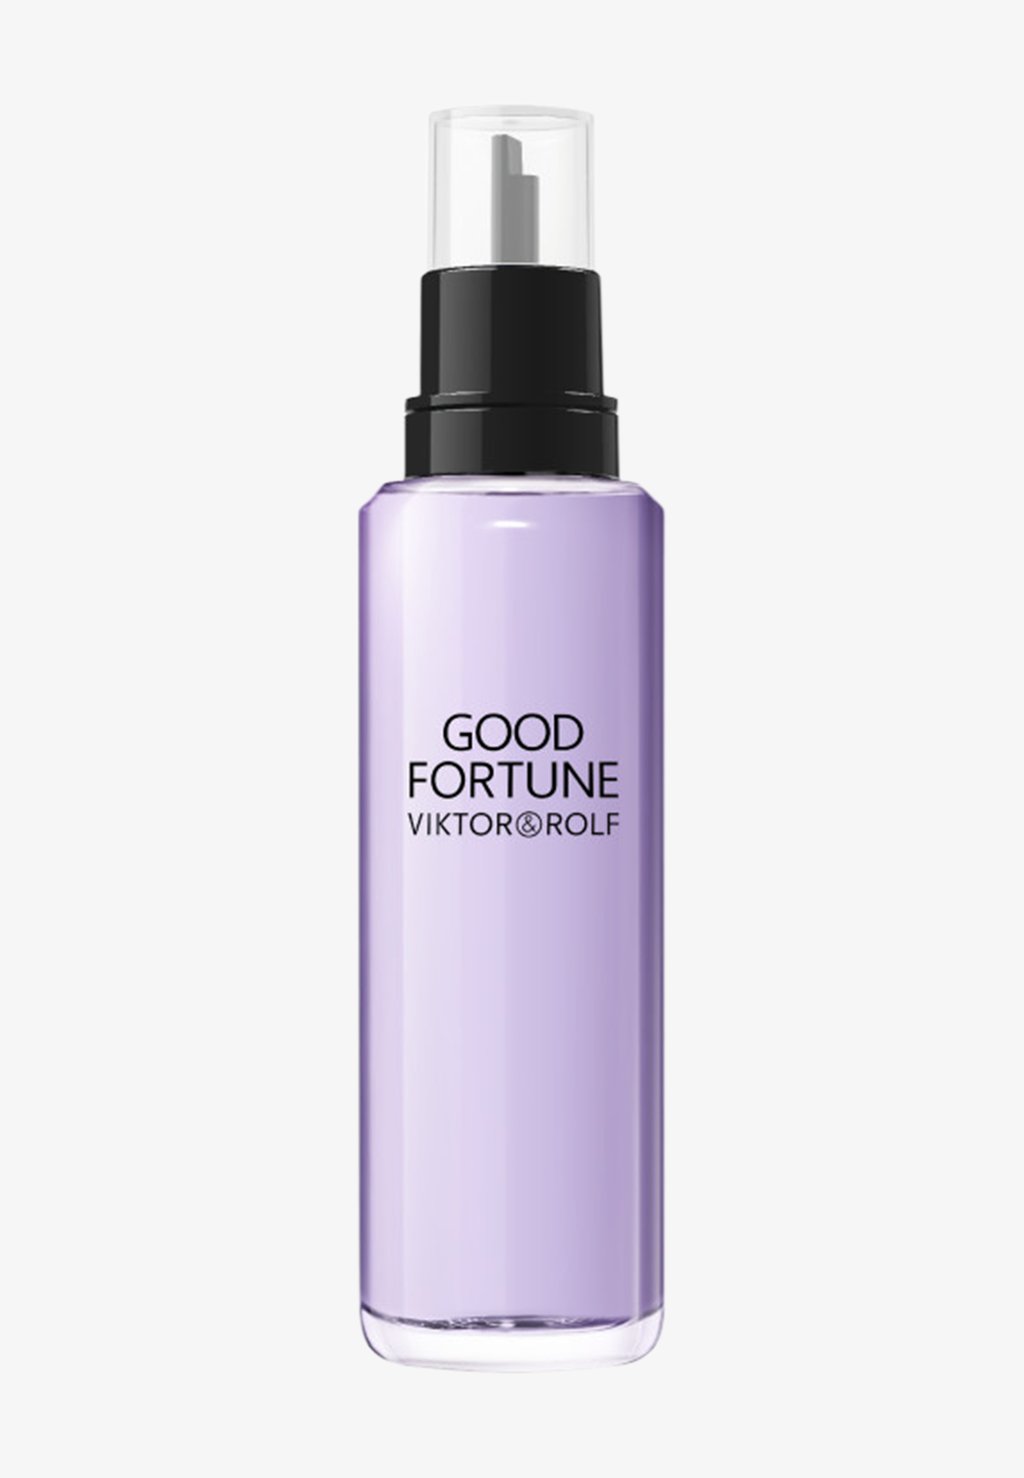 цена Парфюмированная вода Good Fortune Refill Viktor & Rolf Fragrance